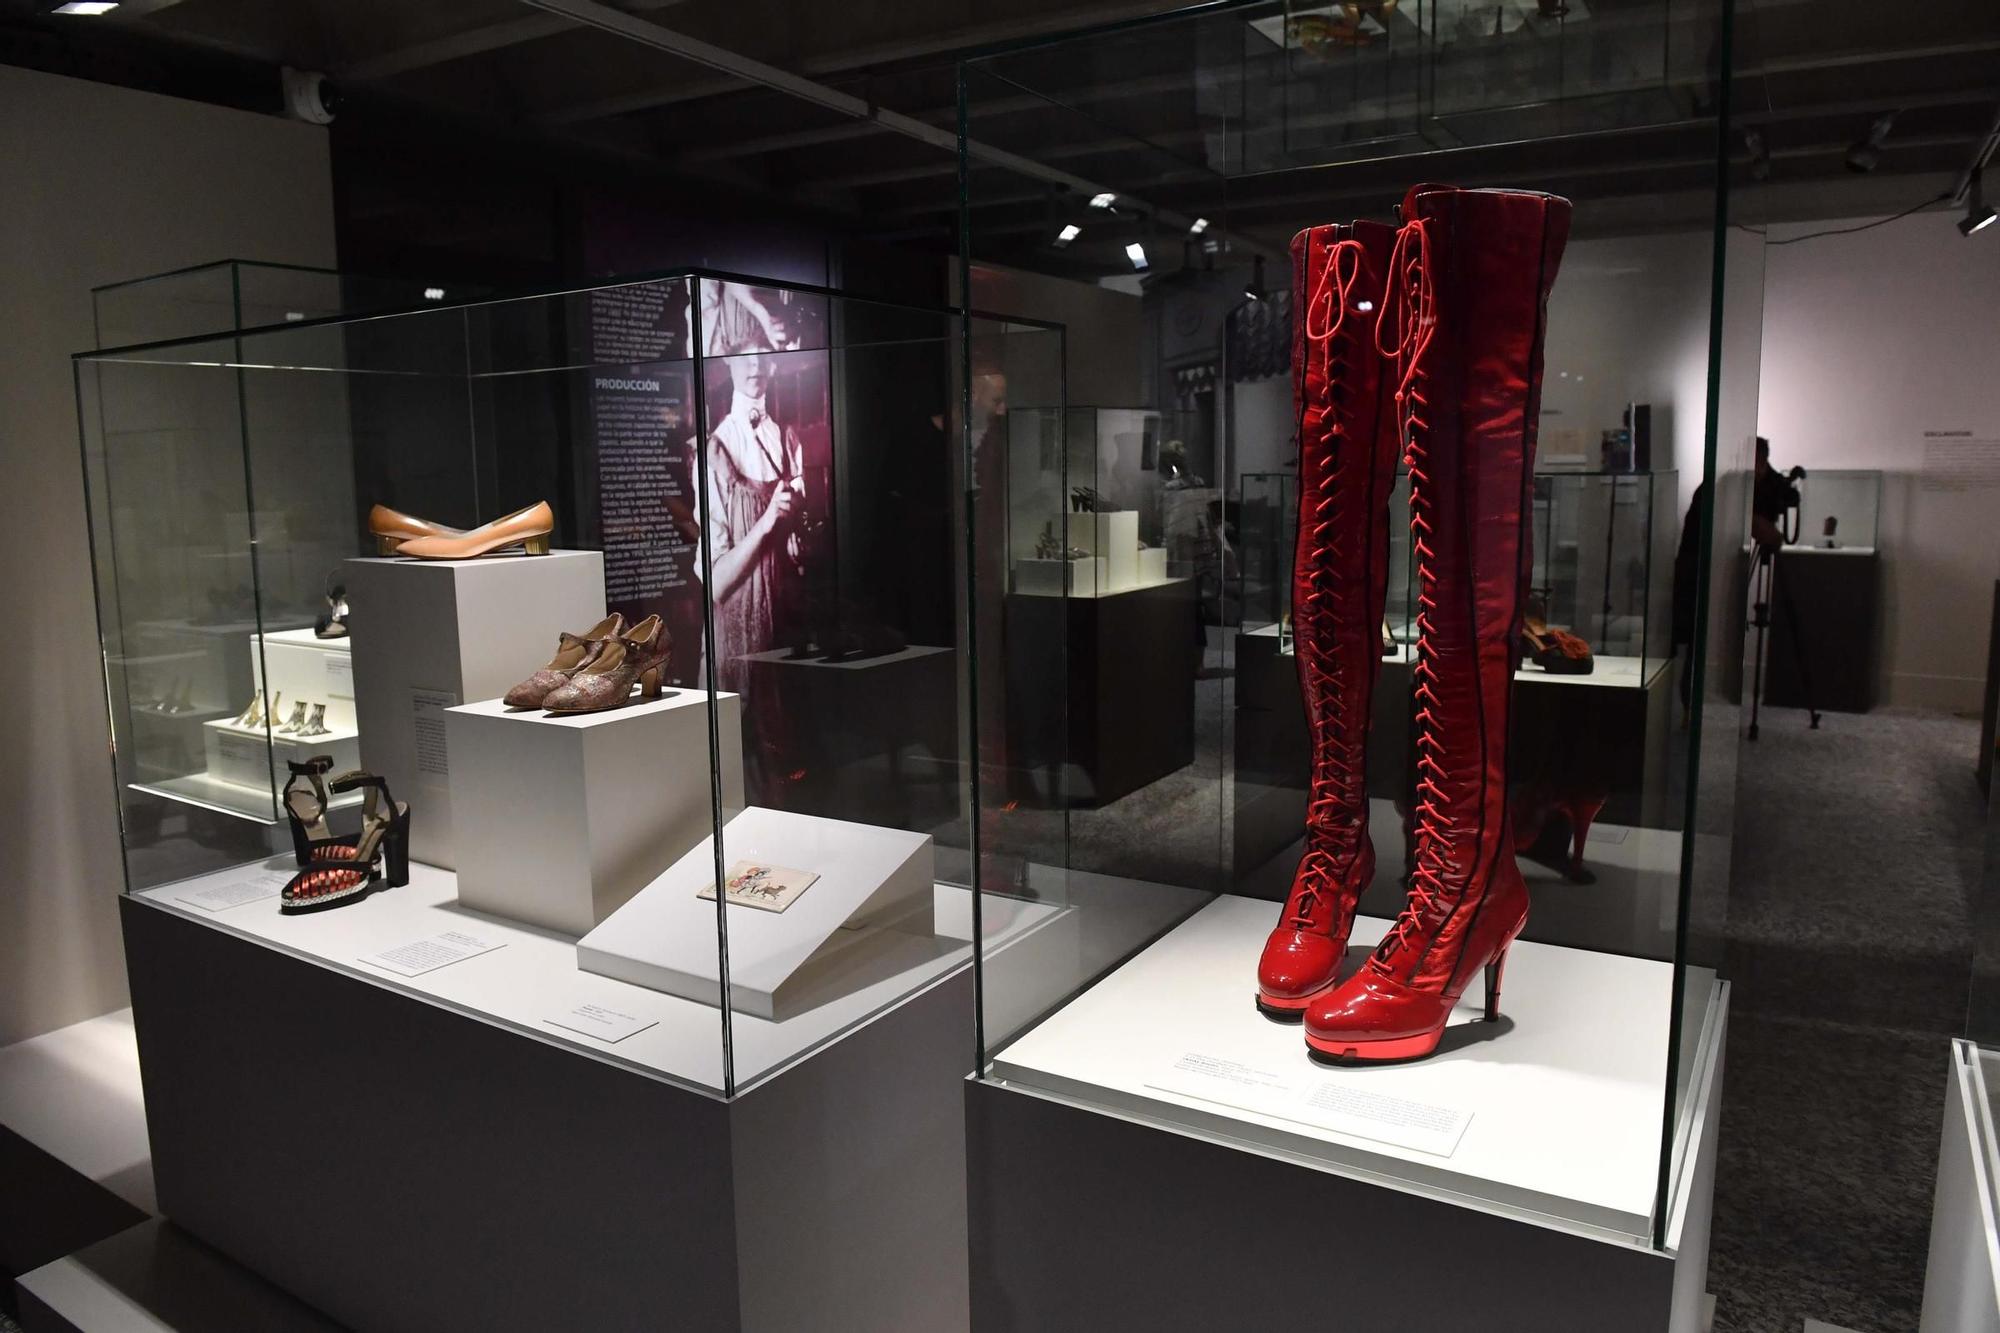 Presentada en A Coruña la exposición 'Walk this way', la colección privada de calzado histórico de Stuart Weitzman